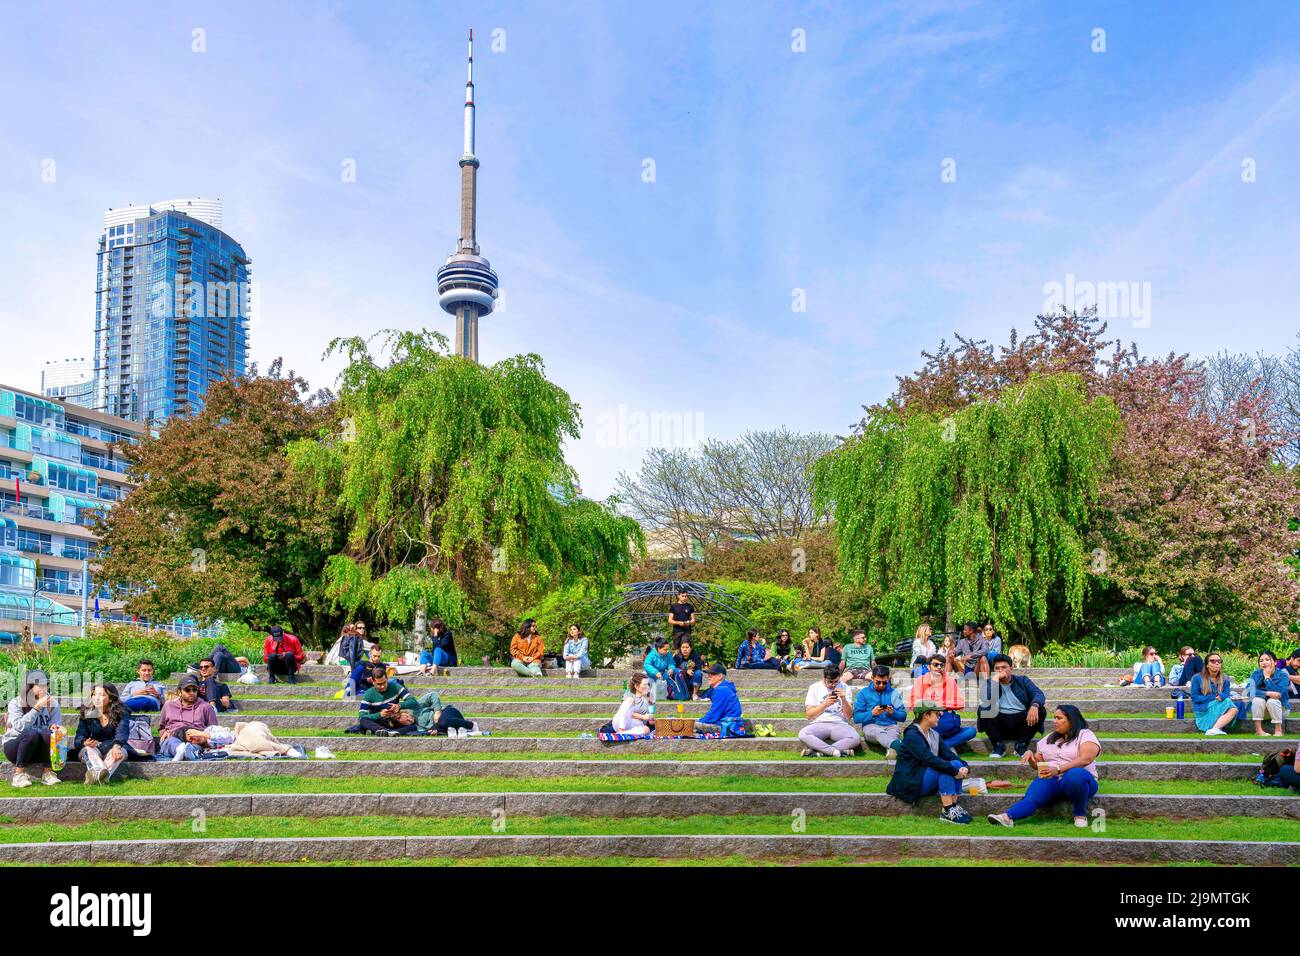 Un gruppo di persone si sta godendo la festa del Victoria Day sui gradini del Music Garden. La CN Tower è visibile sullo sfondo. Foto Stock